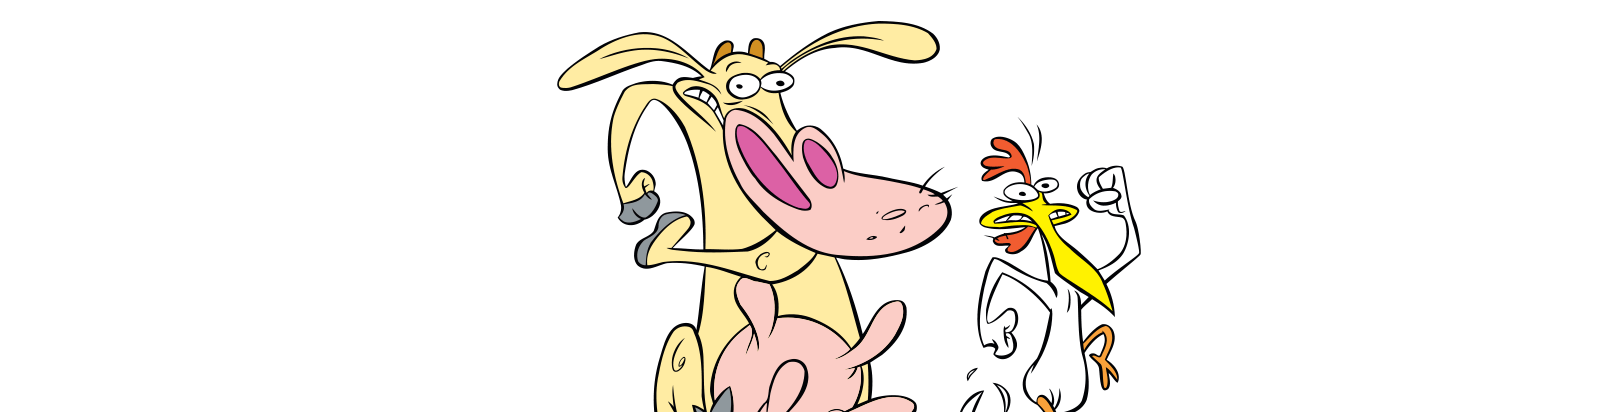 Animales famosos de los dibujos animados: La Vaca y el Pollito